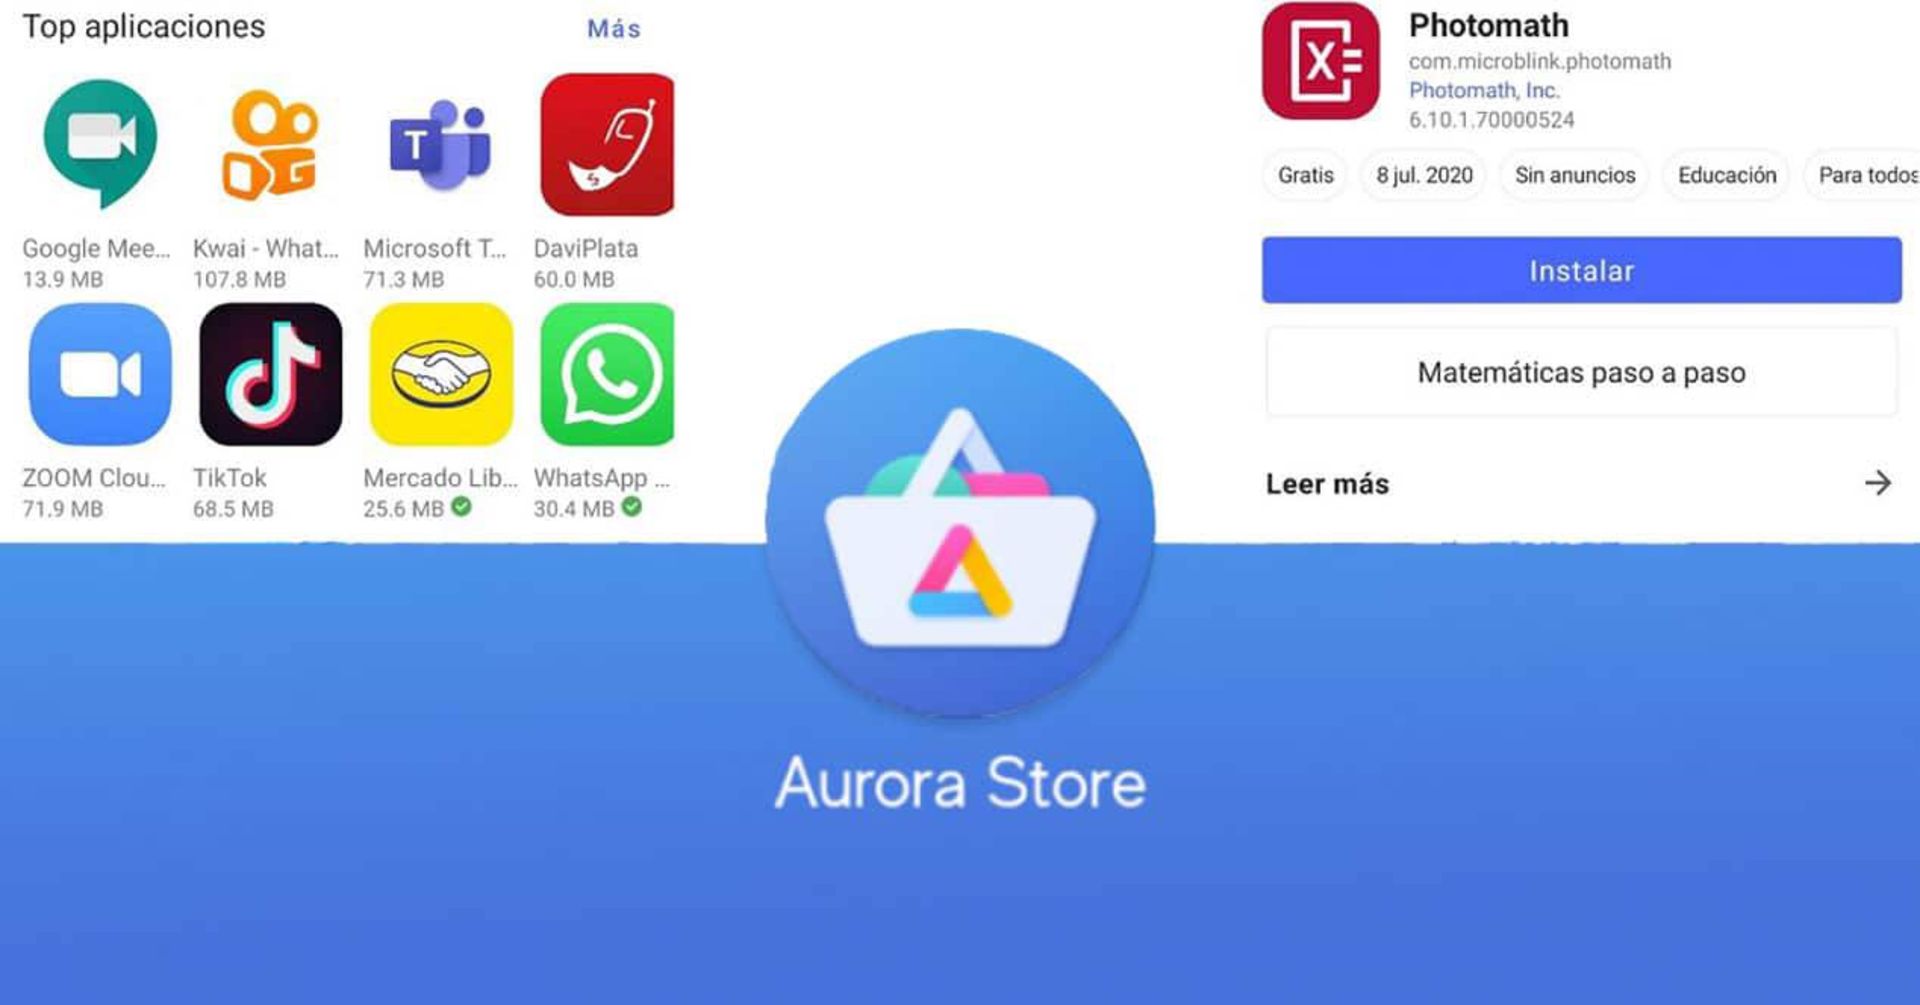 فروشگاه برنامه Aurora